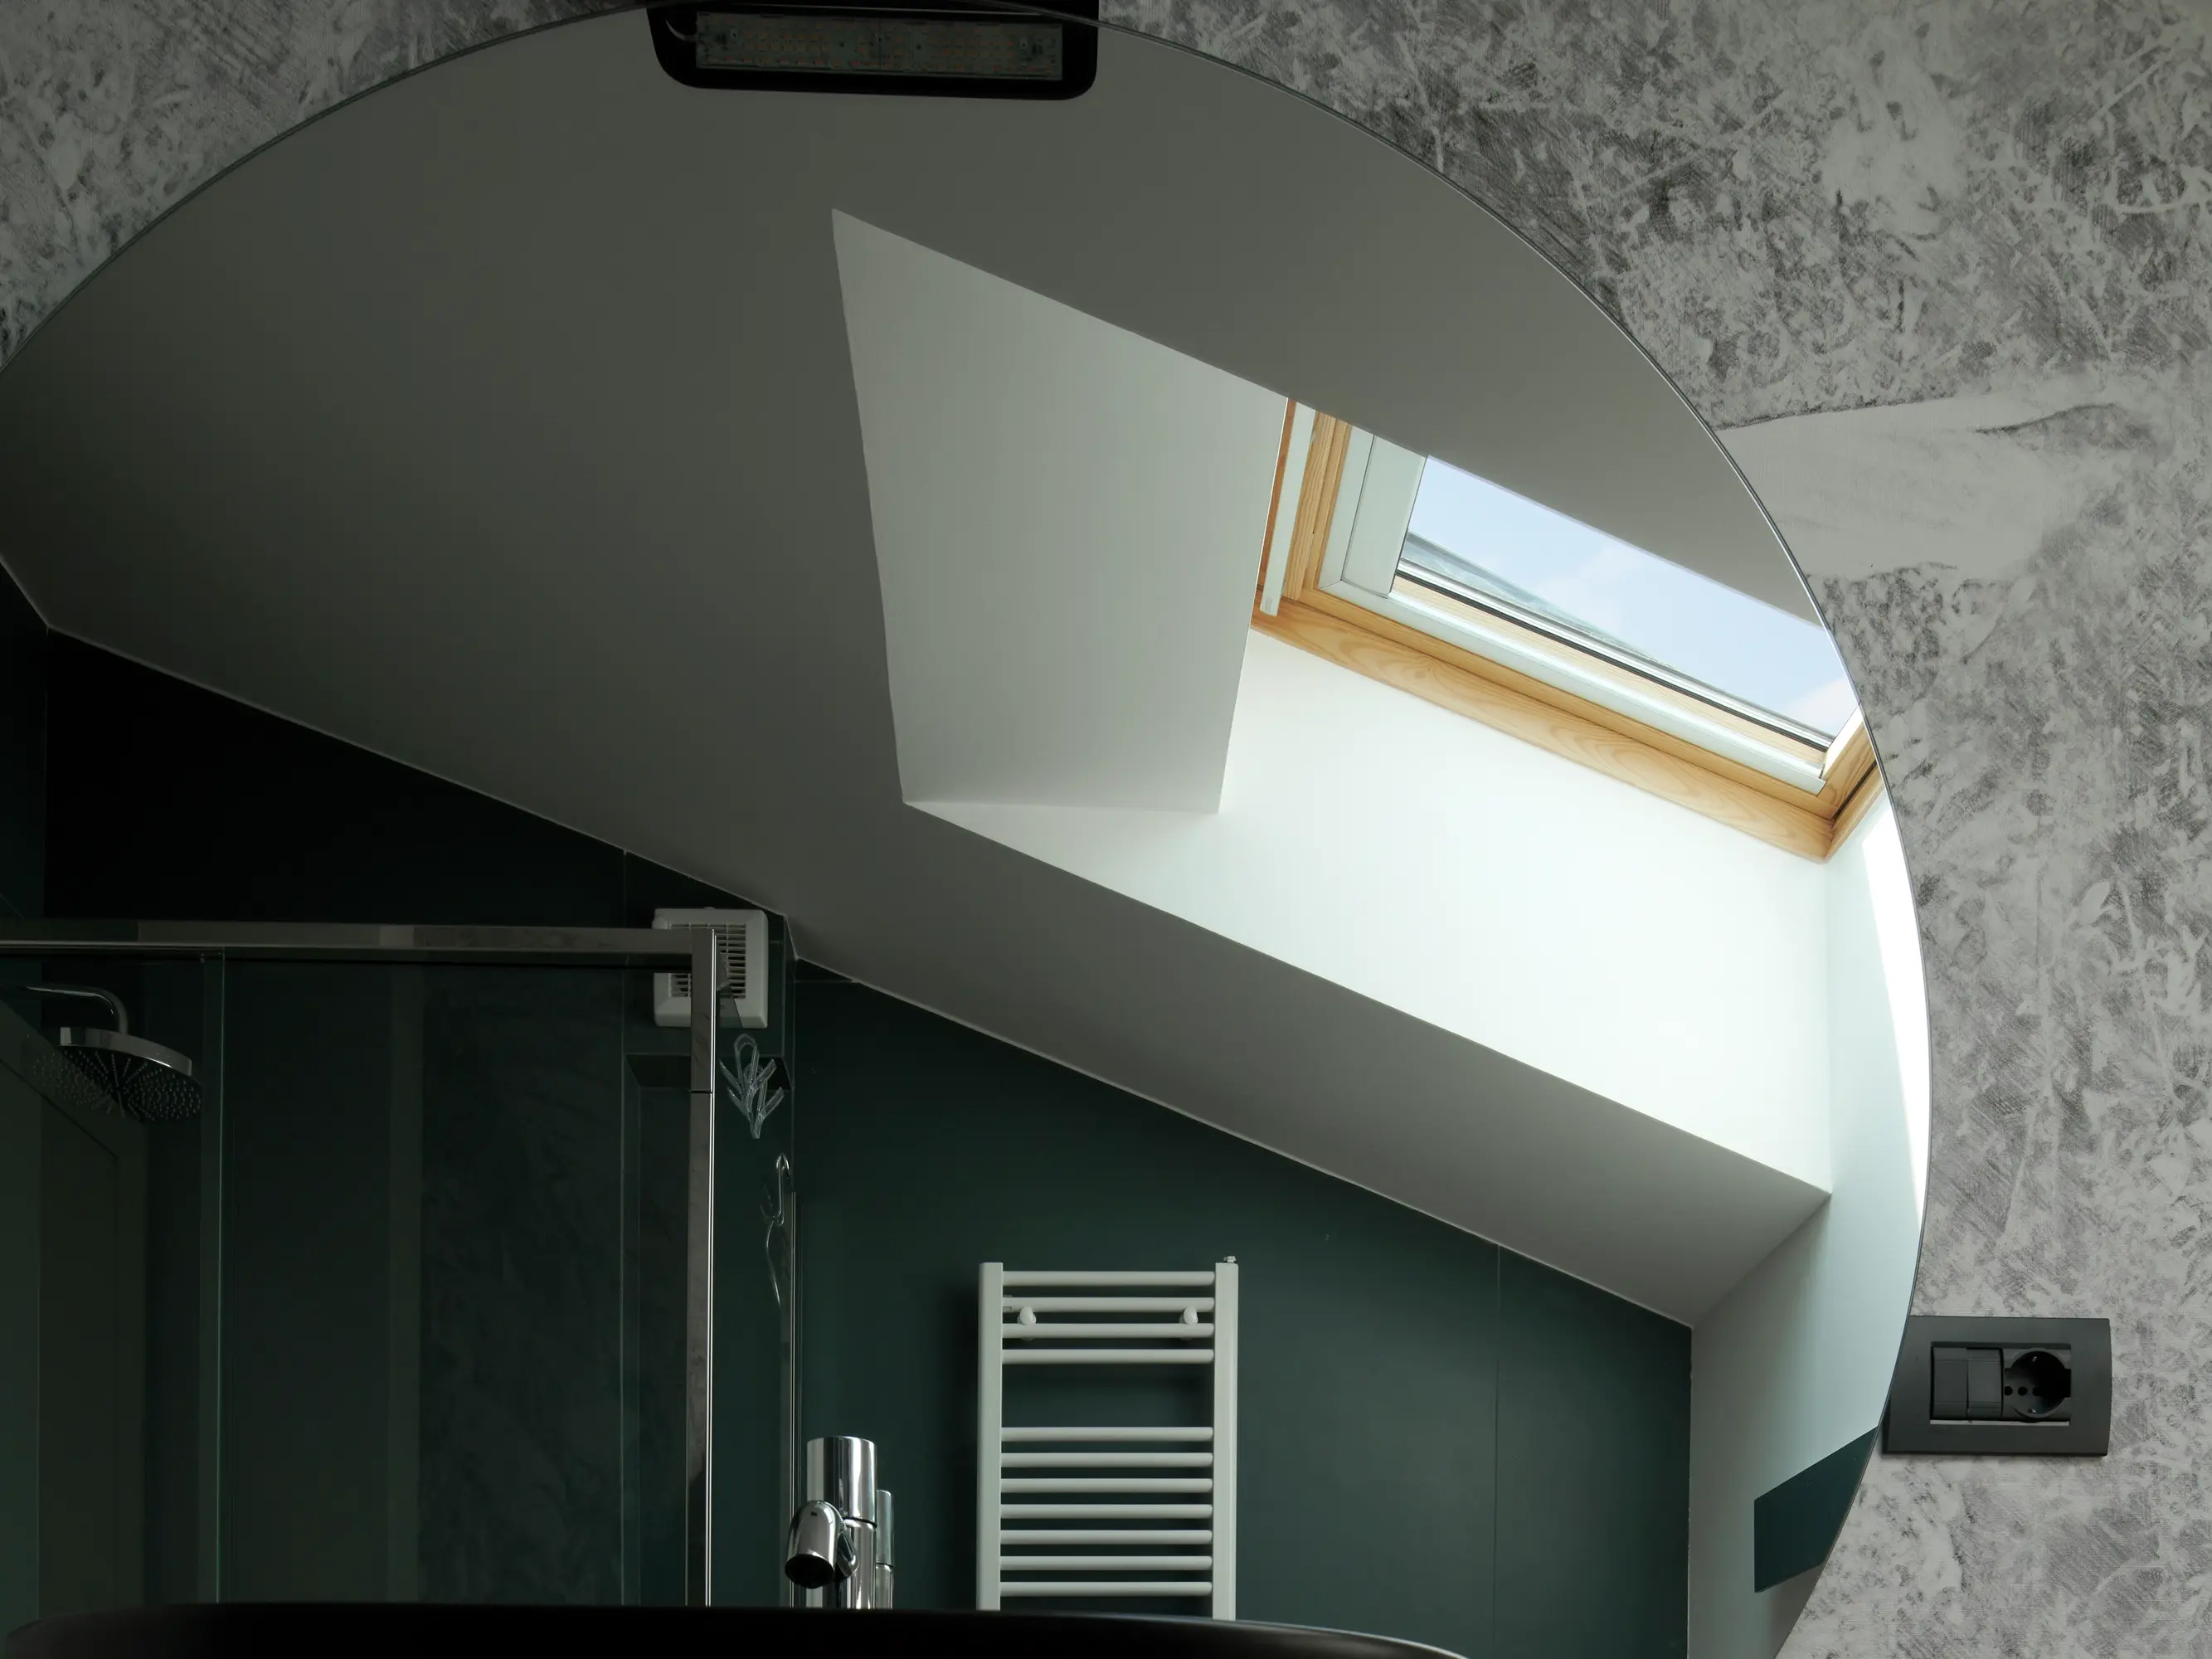 Salle de bain moderne avec une fenêtre de toit VELUX offrant une lumière naturelle.